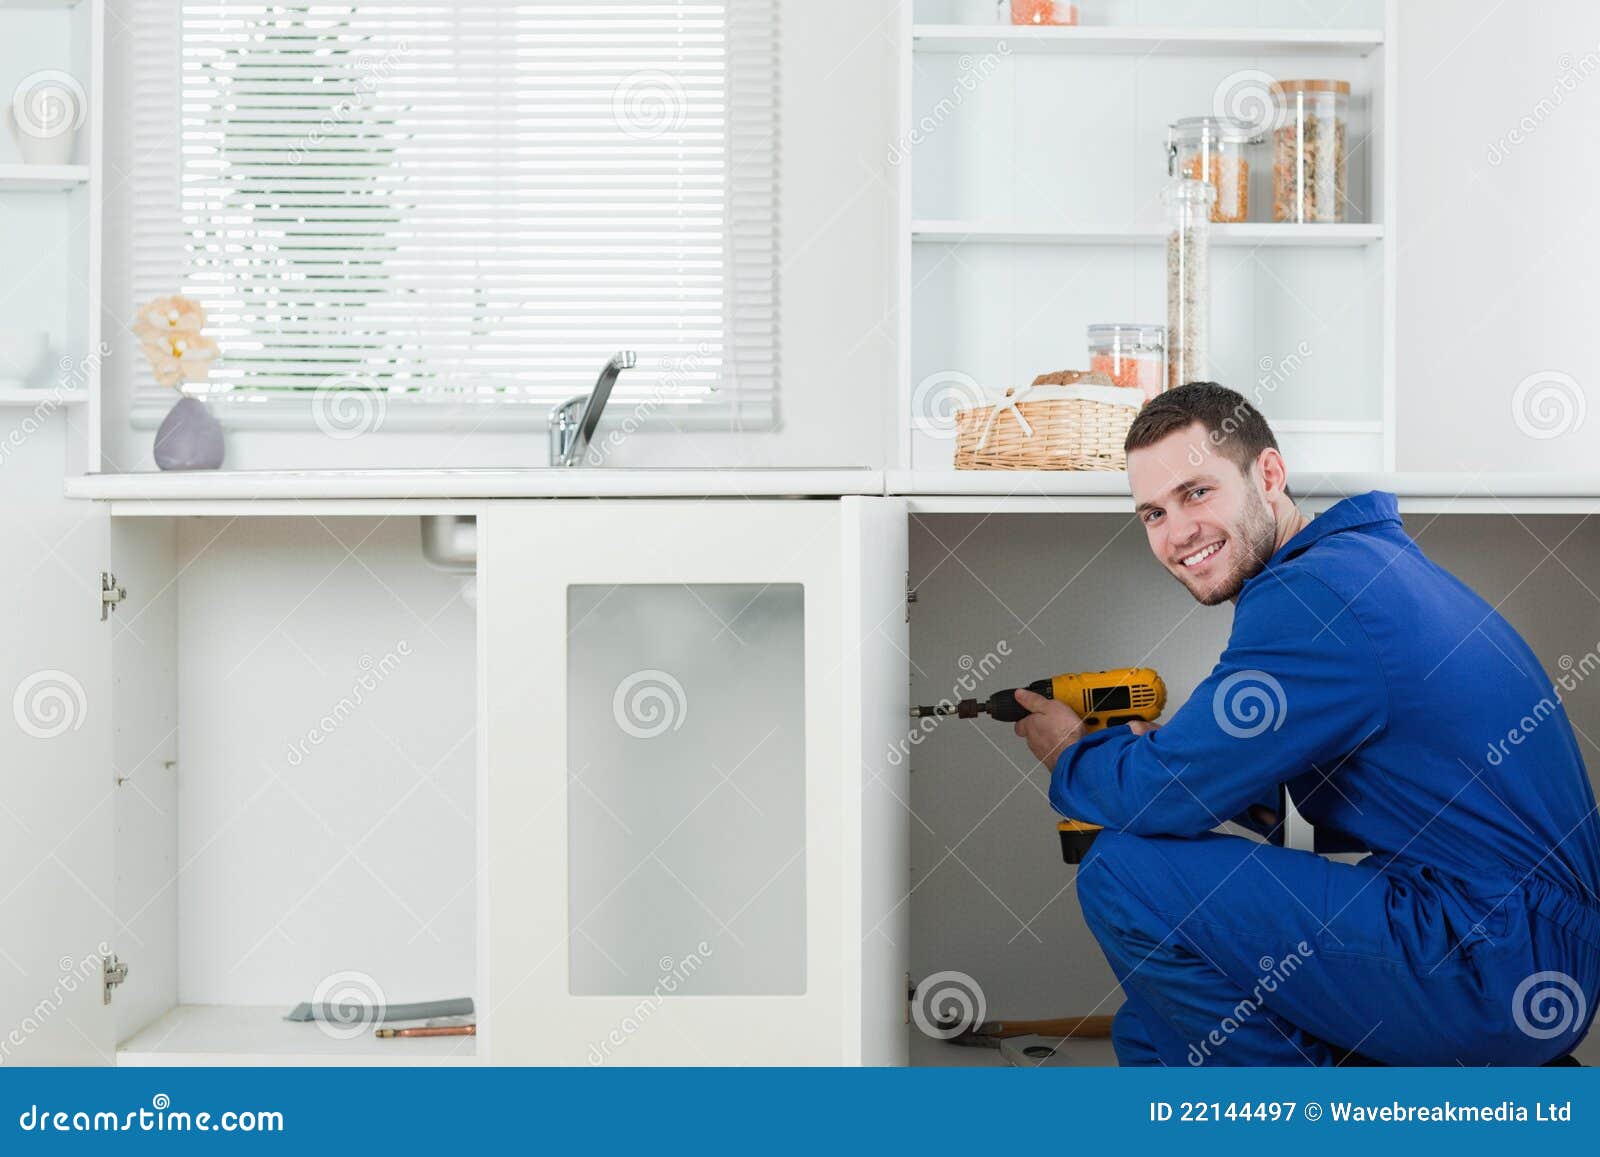 smiling handyman fixing a door